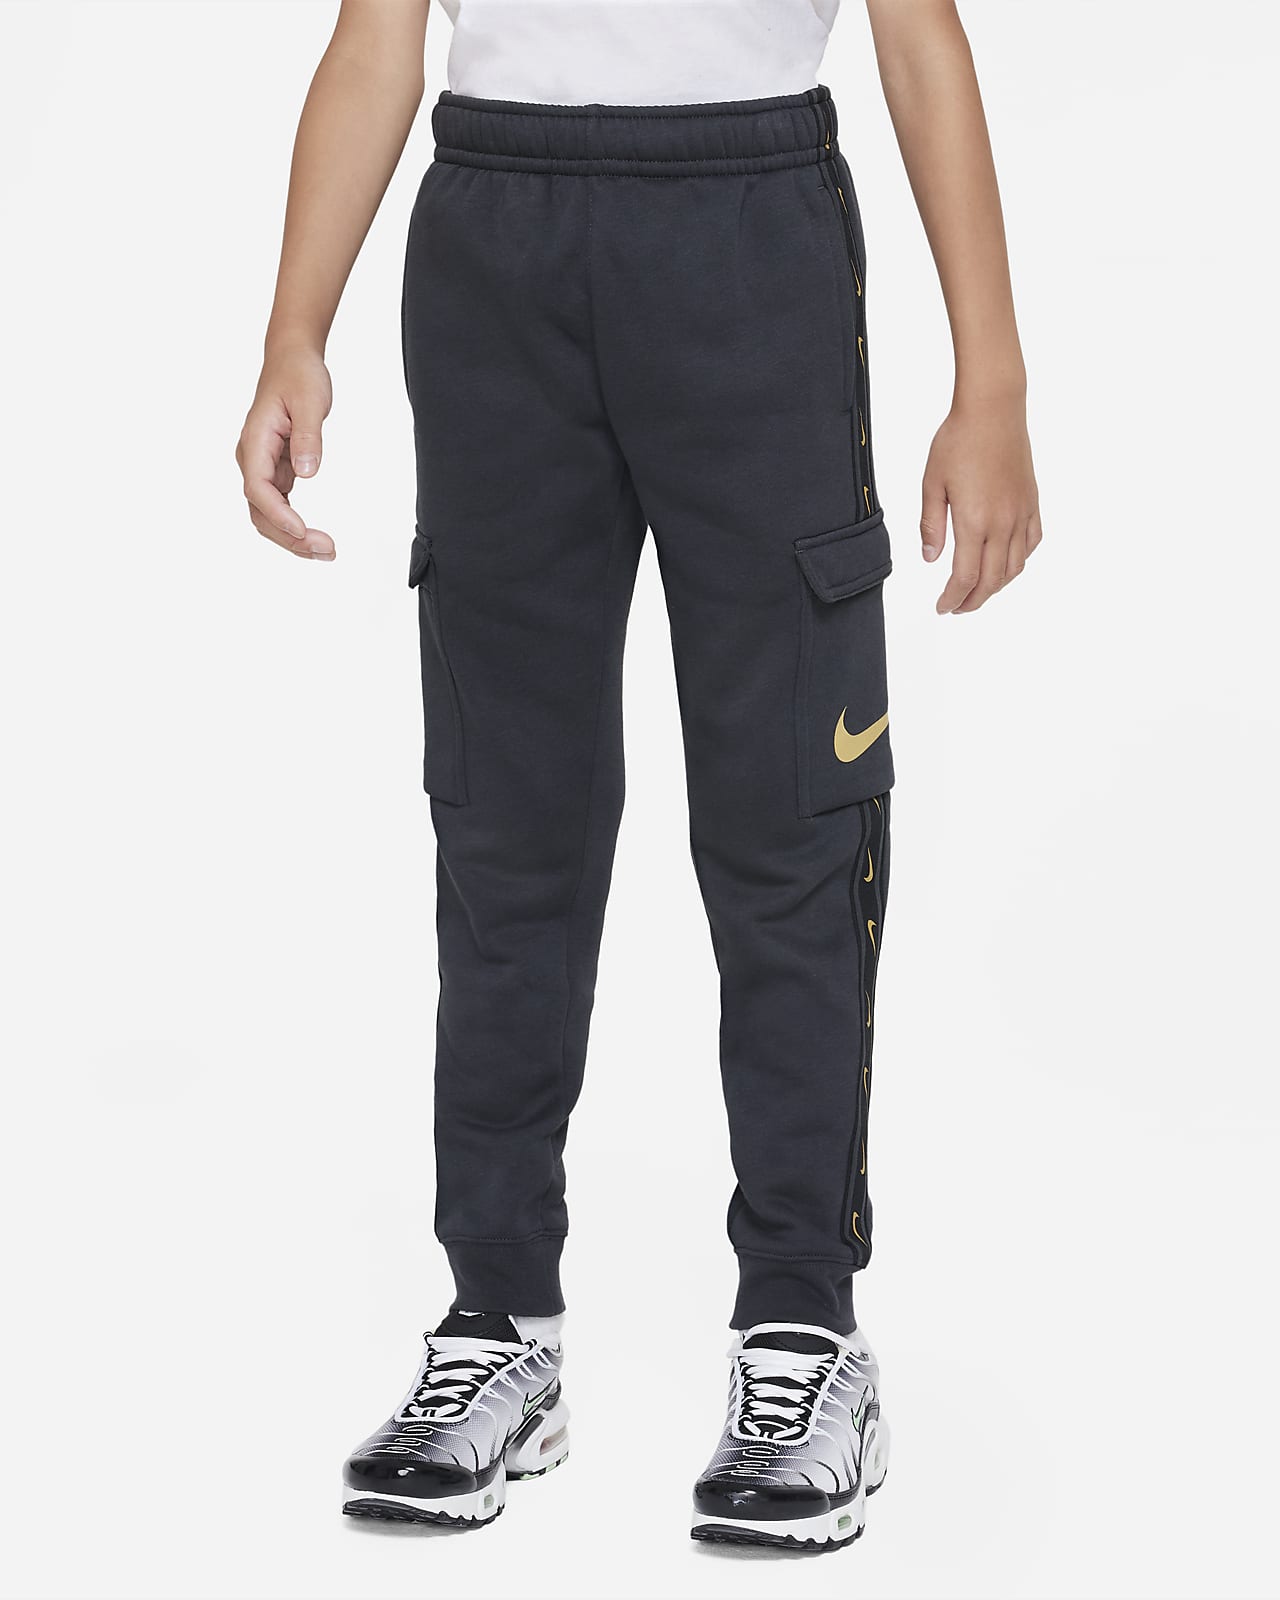 Pantaloni cargo in fleece Nike Sportswear Repeat – Ragazzo